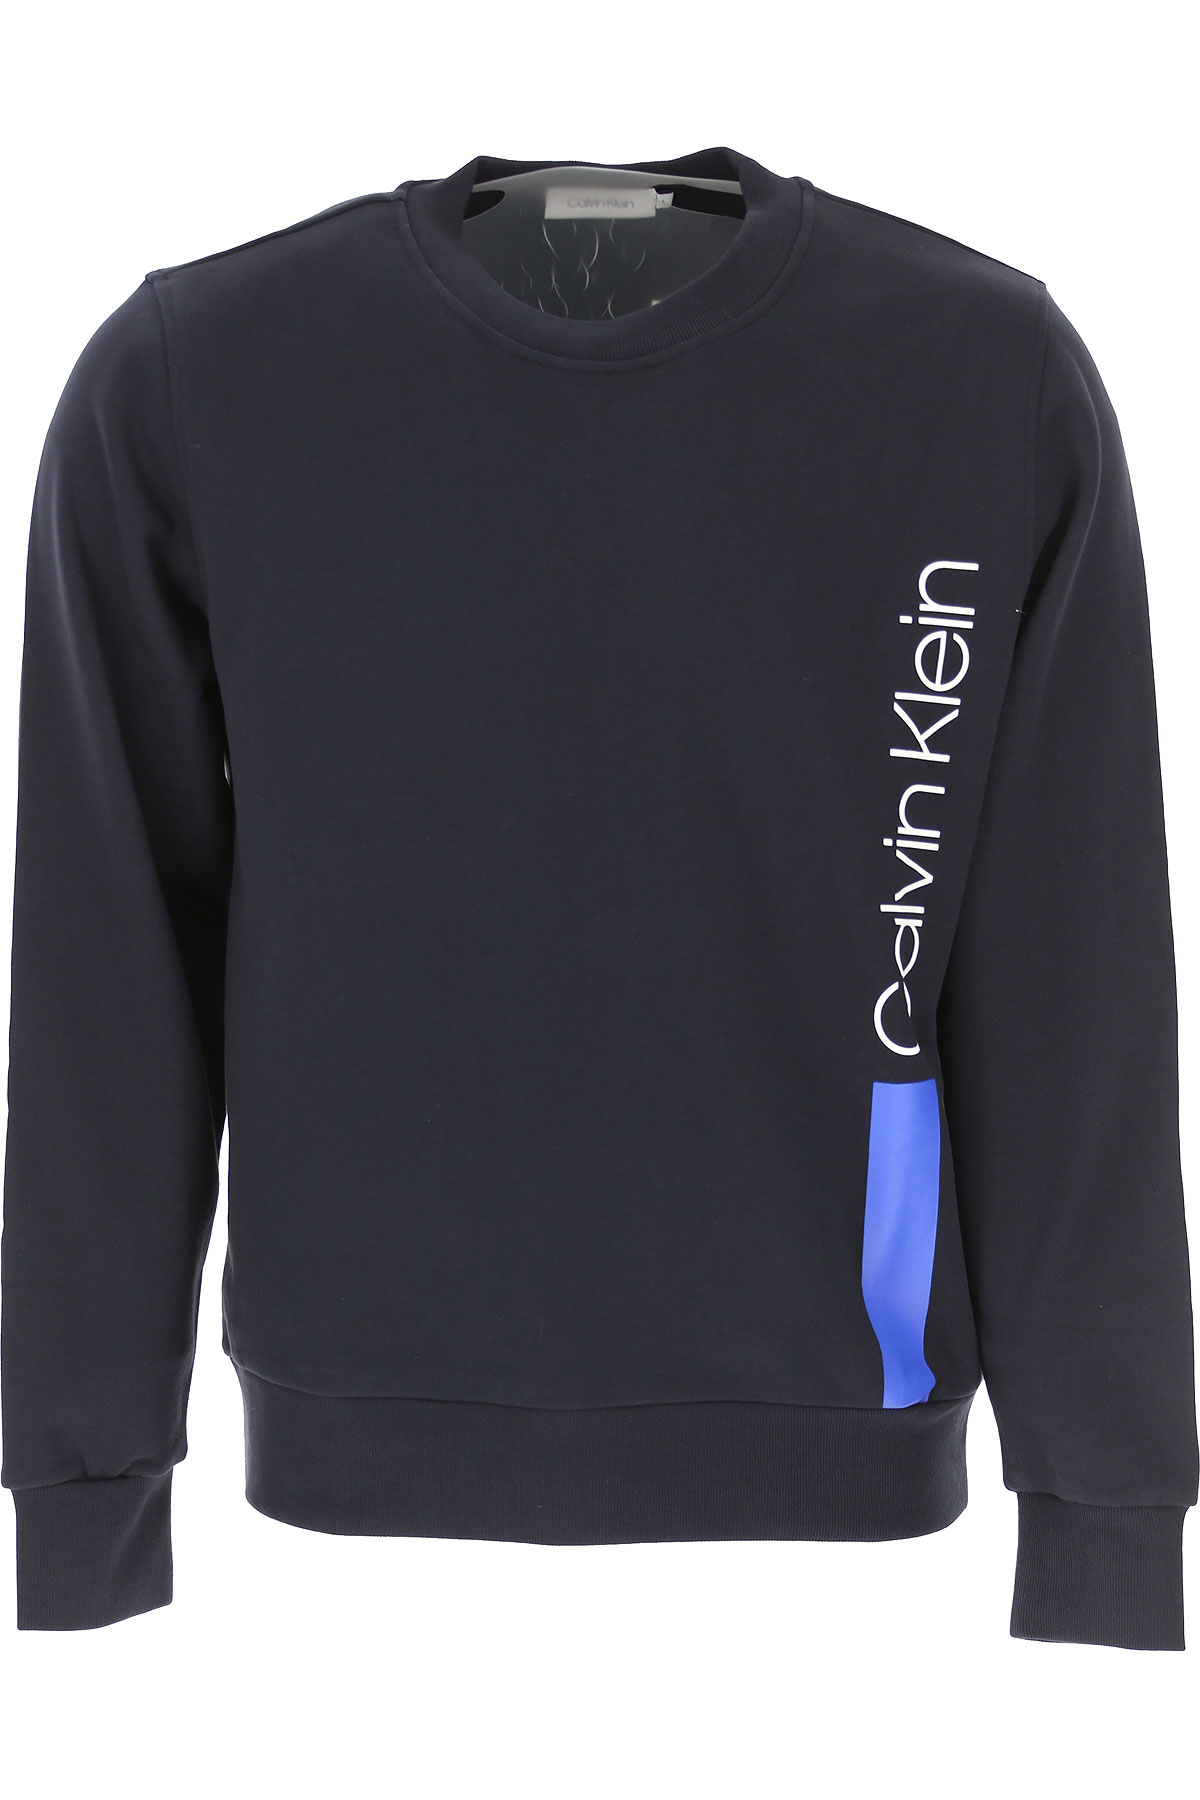 Calvin Klein Sweatshirt für Herren, Kapuzenpulli, Hoodie, Sweats Günstig im Sale, dunkel Mitternachtblauu, Baumwolle, 2017, L M